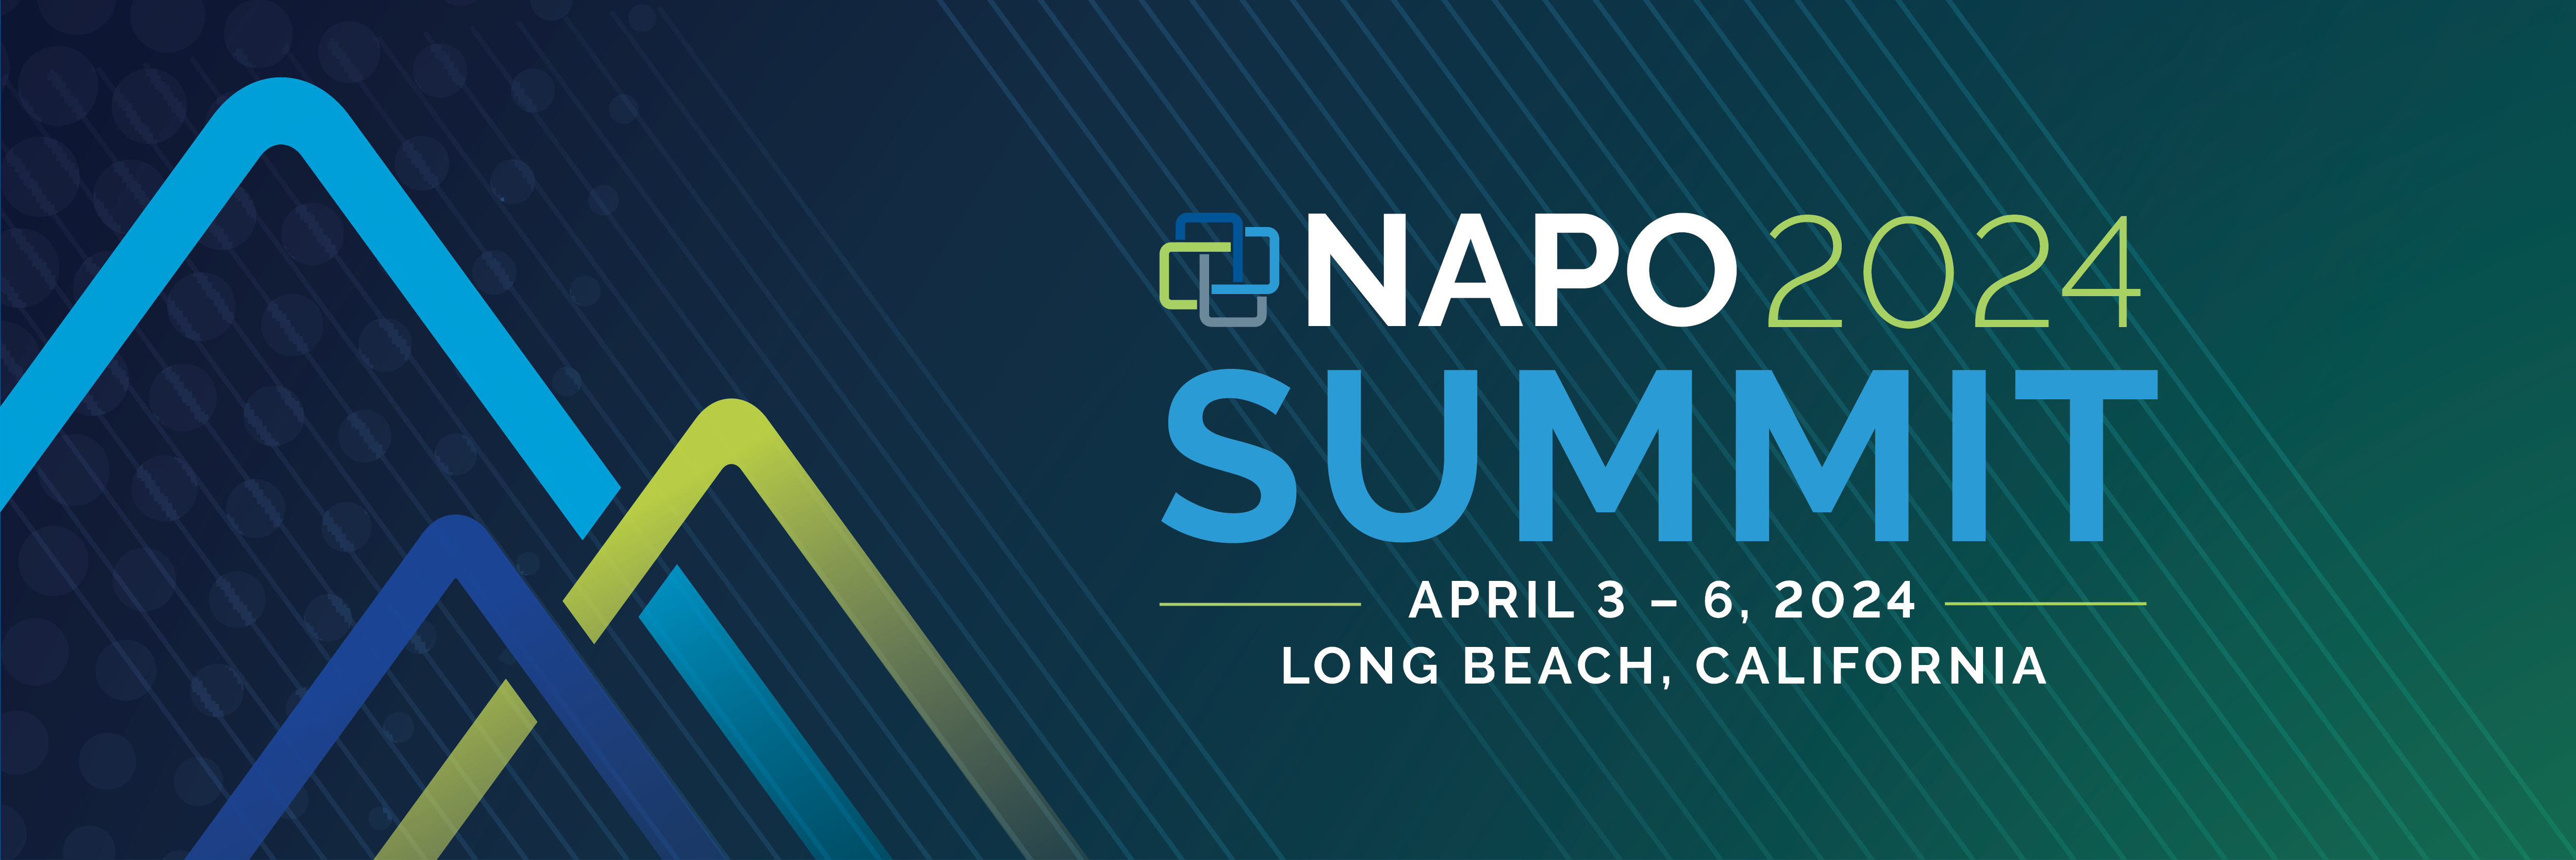 NAPO2024 Summit